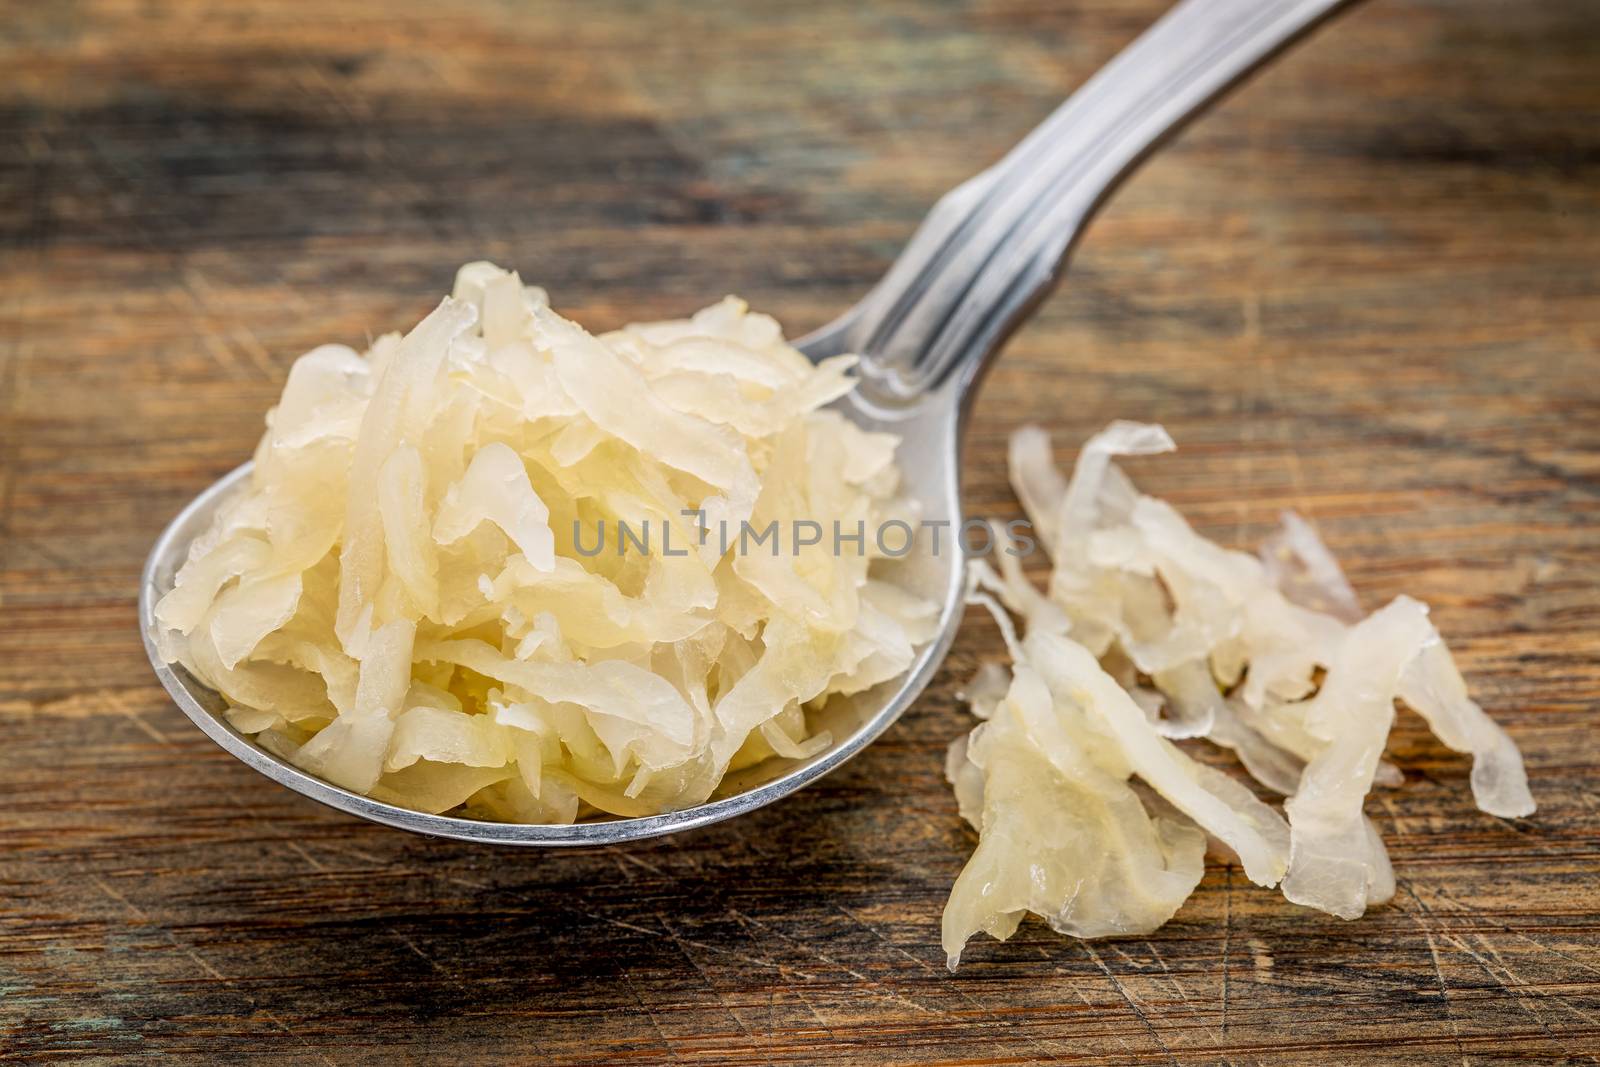 tablespoon of sauerkraut by PixelsAway